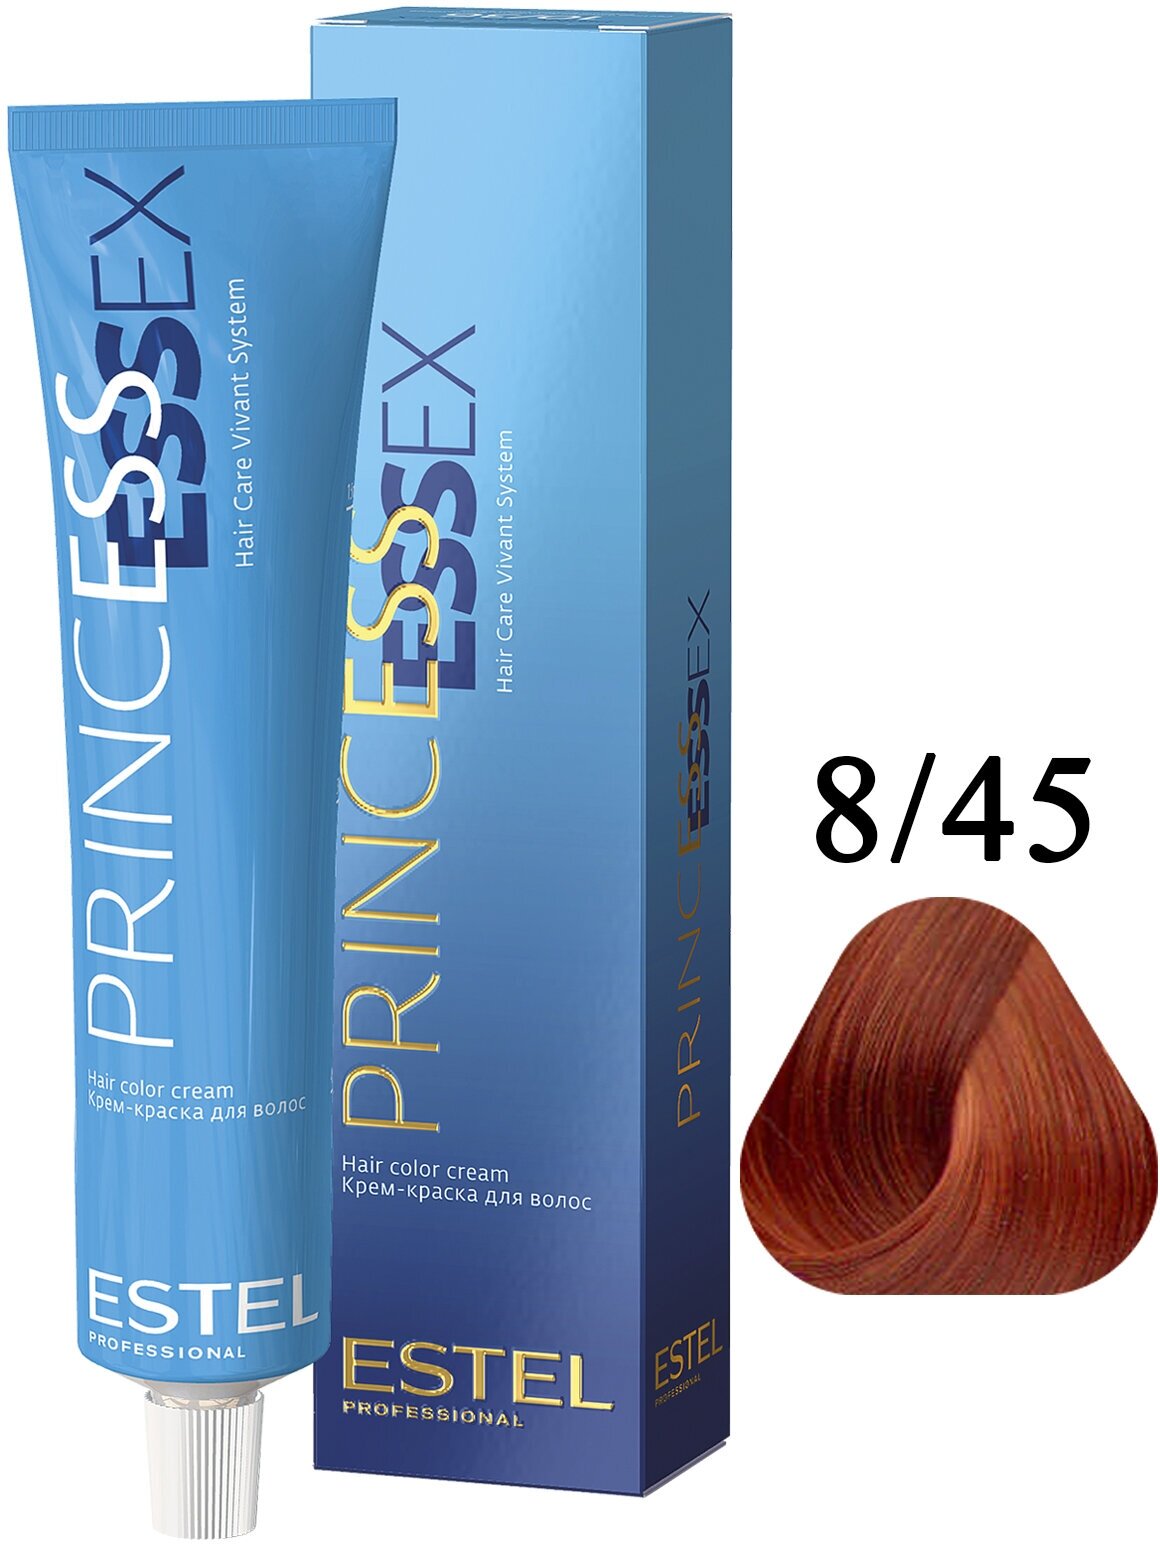 Крем-краска PRINCESS ESSEX для окрашивания волос ESTEL PROFESSIONAL 8/45 светло-русый медно-красный/авантюрин 60 мл